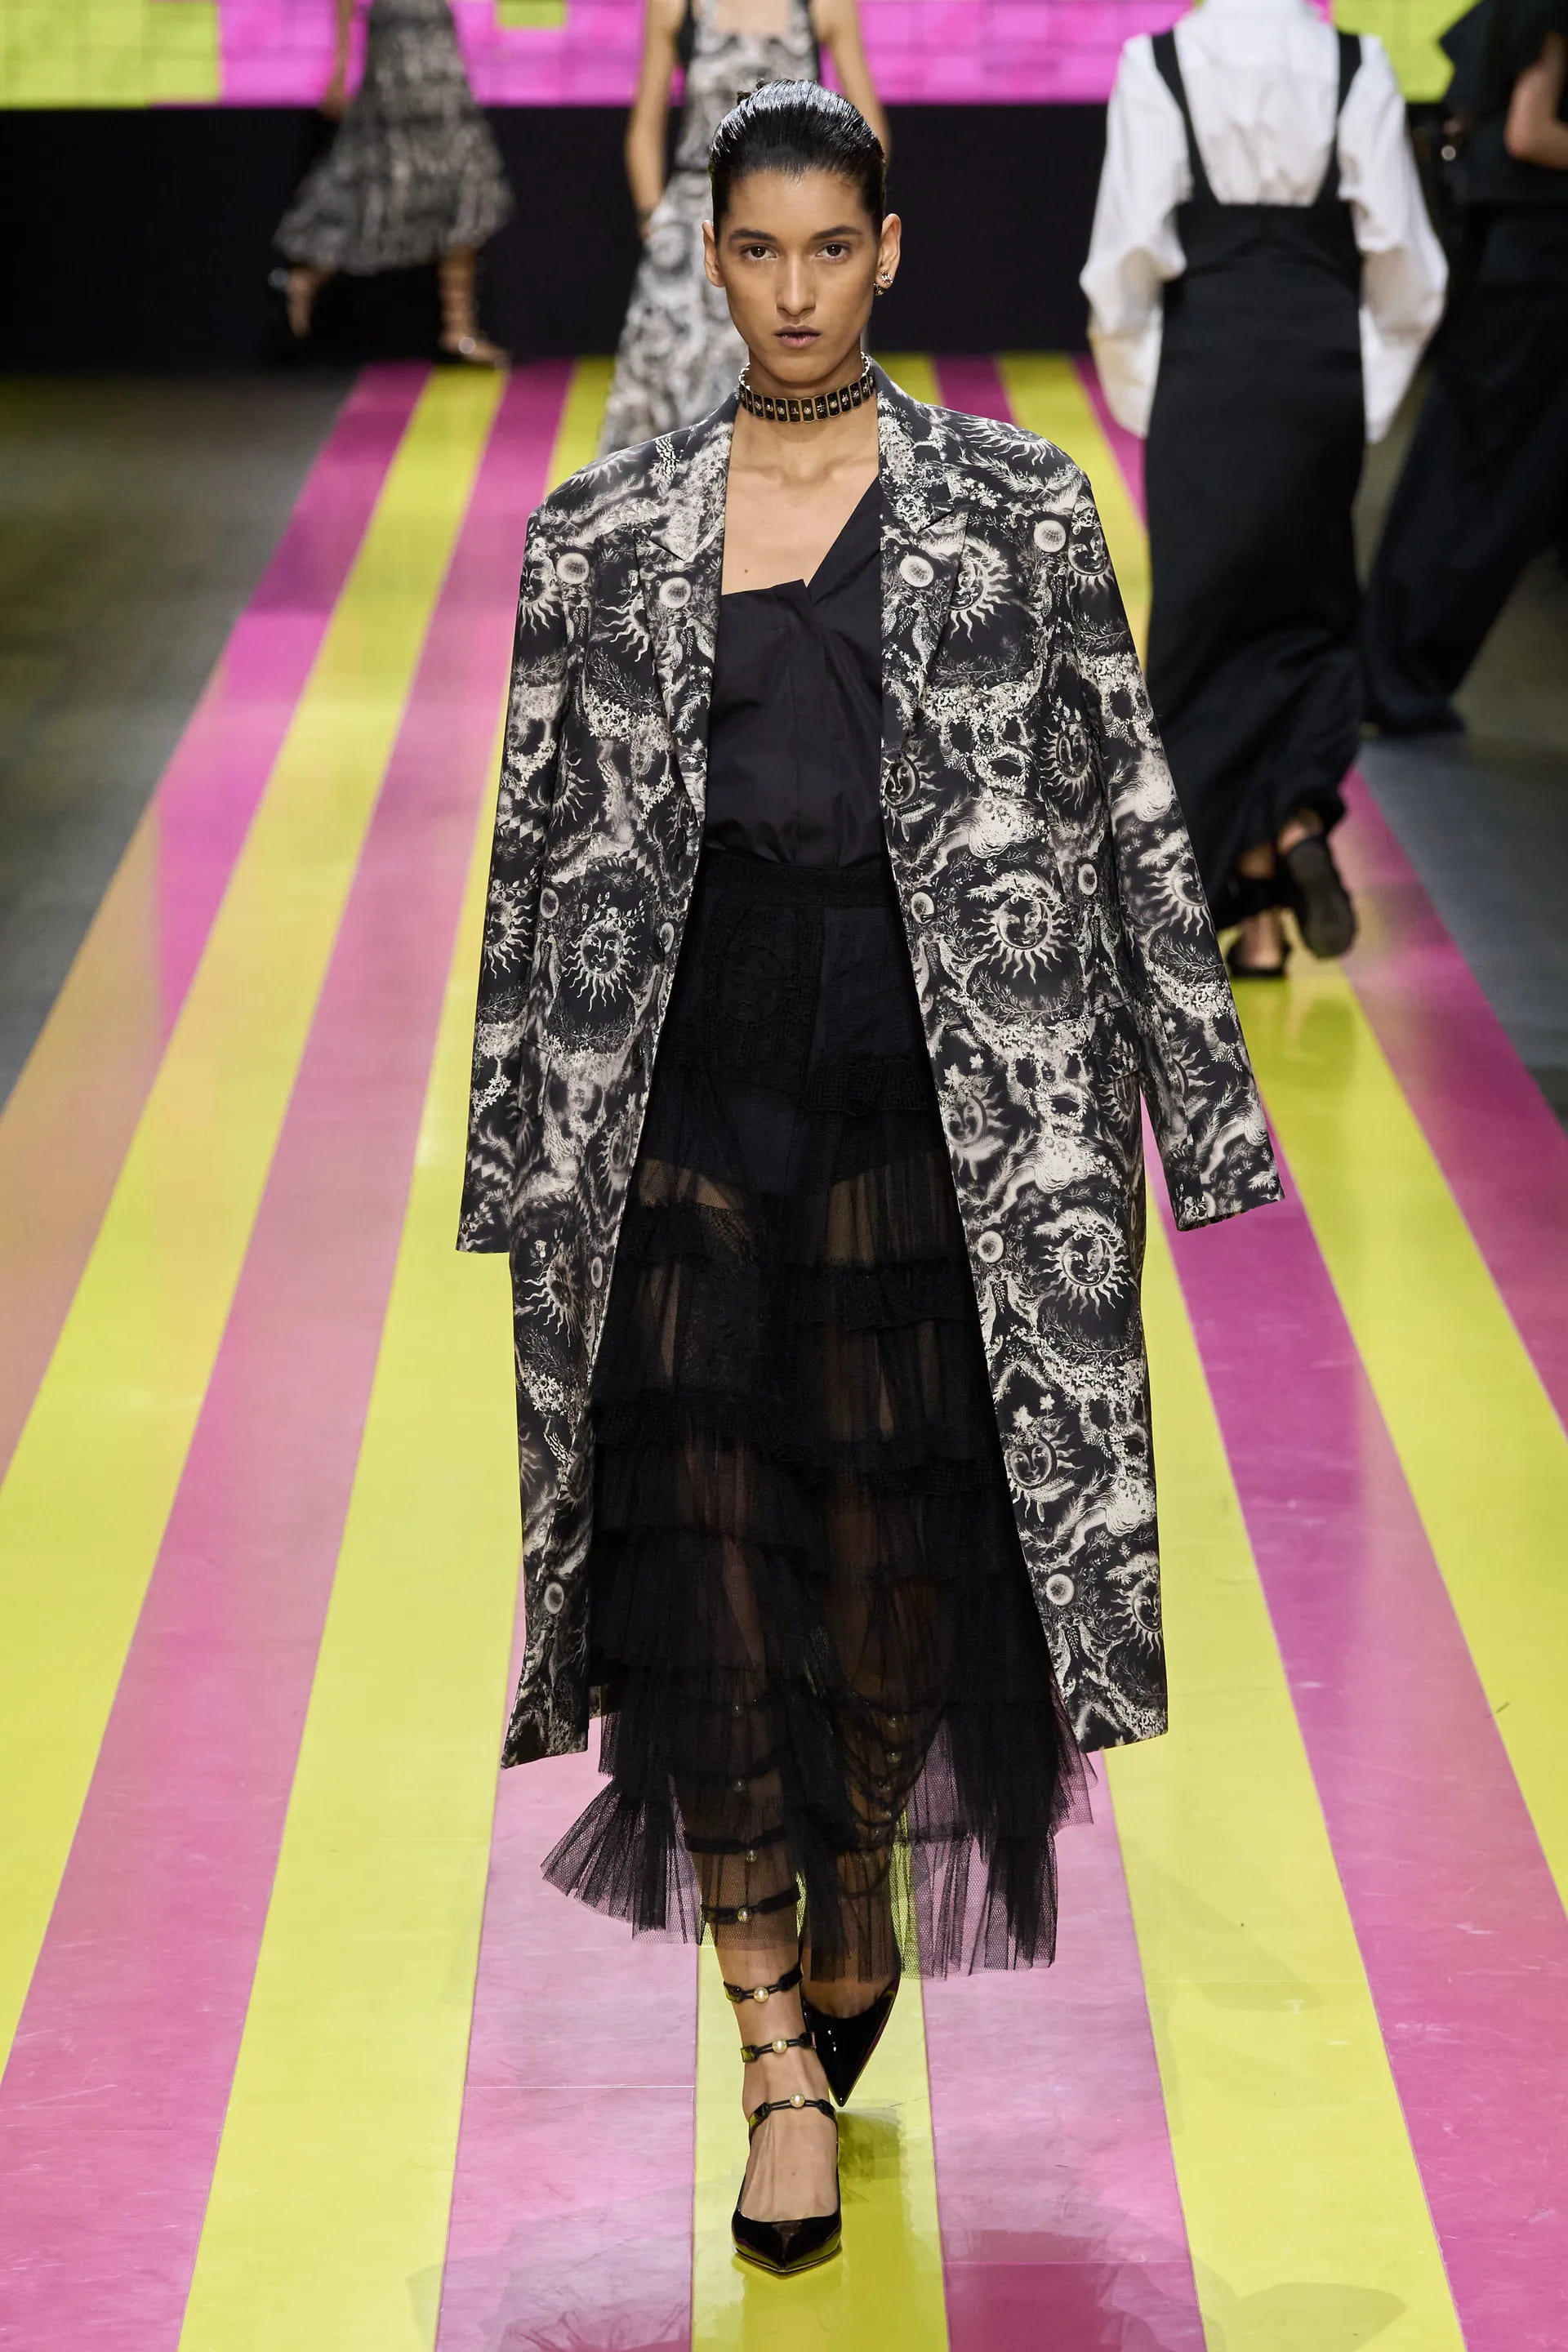  Троянди на сукнях, сиві Хелен Міррен та Енді МакДауелл на подіумі та прощальна колекція Сари Бартон для Alexander McQueen: подробиці Paris Fashion Week - фото 26